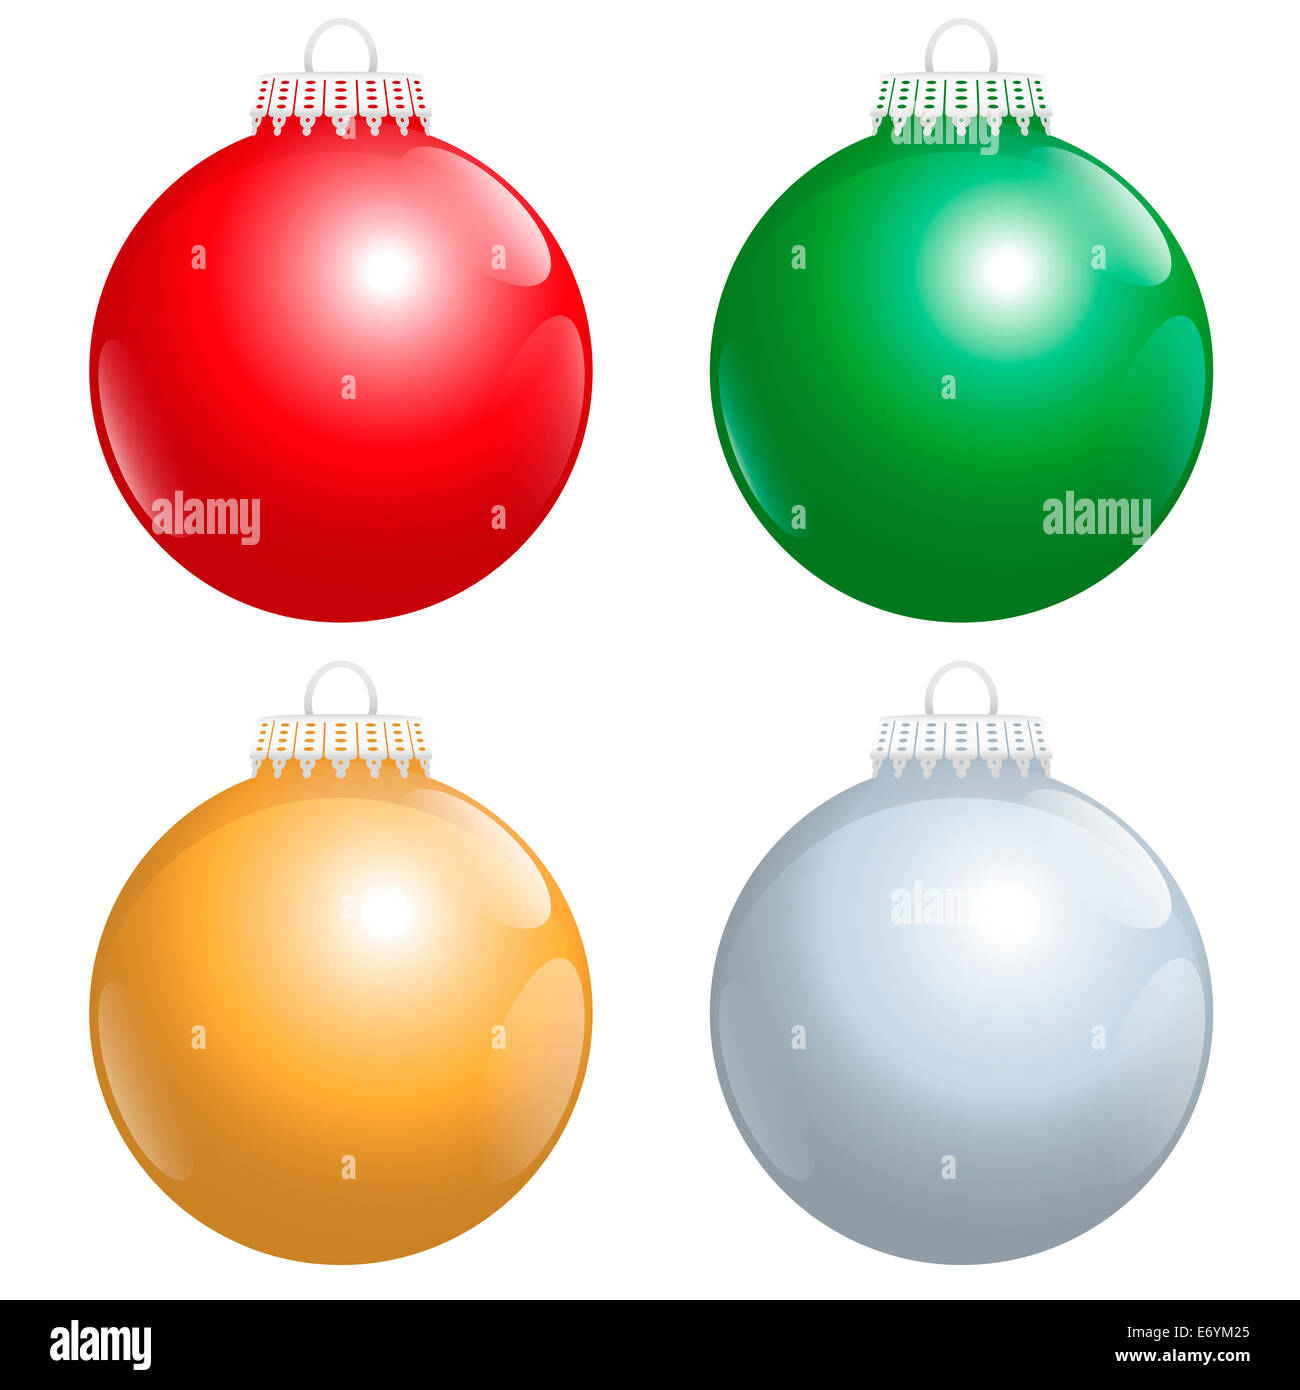 Die vier beliebtesten Farben der glänzenden Christbaumkugeln: rot, grün, Gold und Silber. Stockfoto